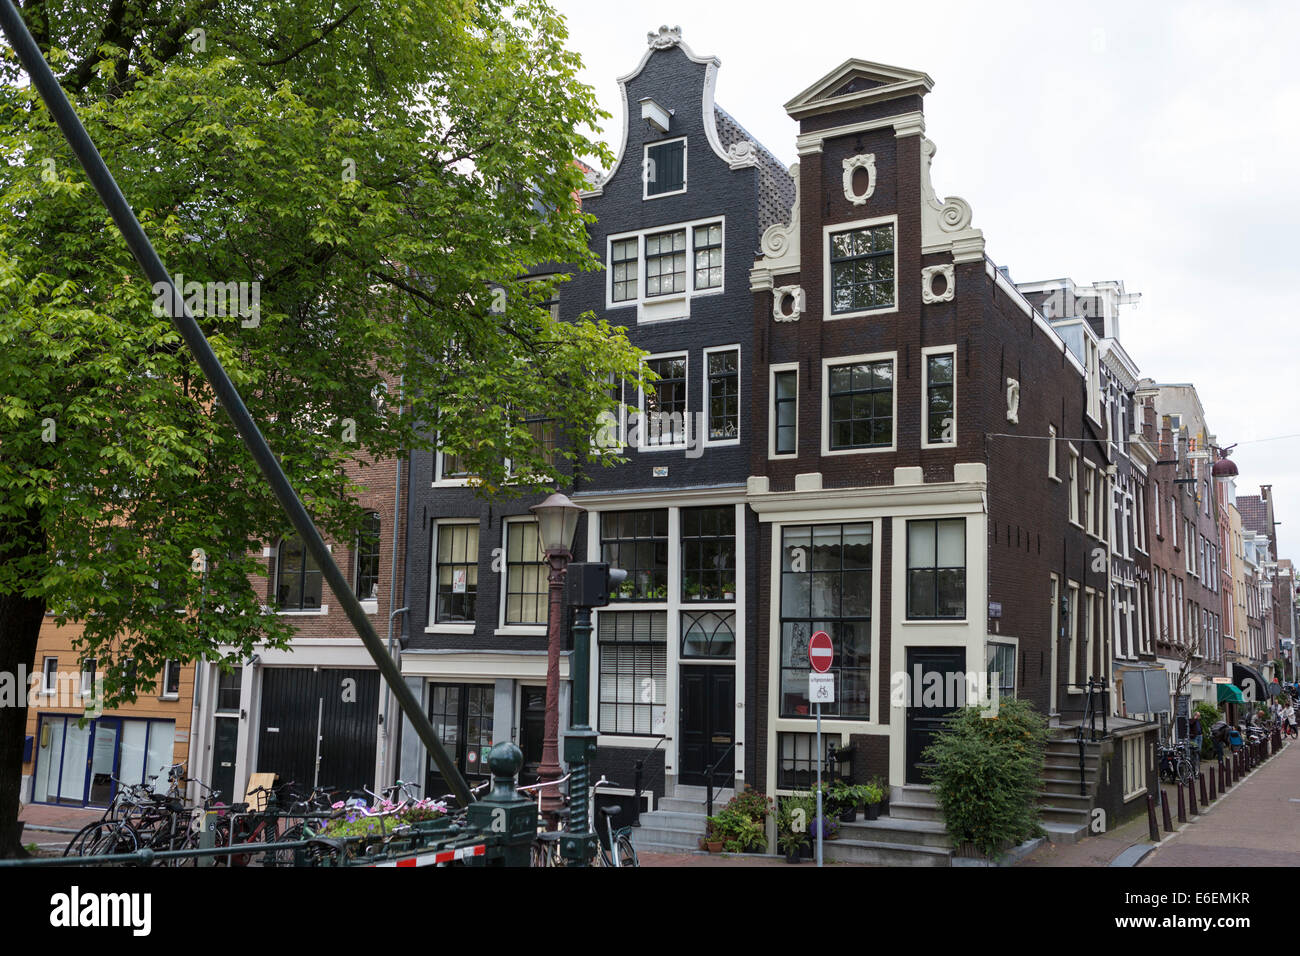 Blick auf historische Häuser im berühmten Stadtteil 'Jordaan' in Amsterdam in den Niederlanden. Stockfoto